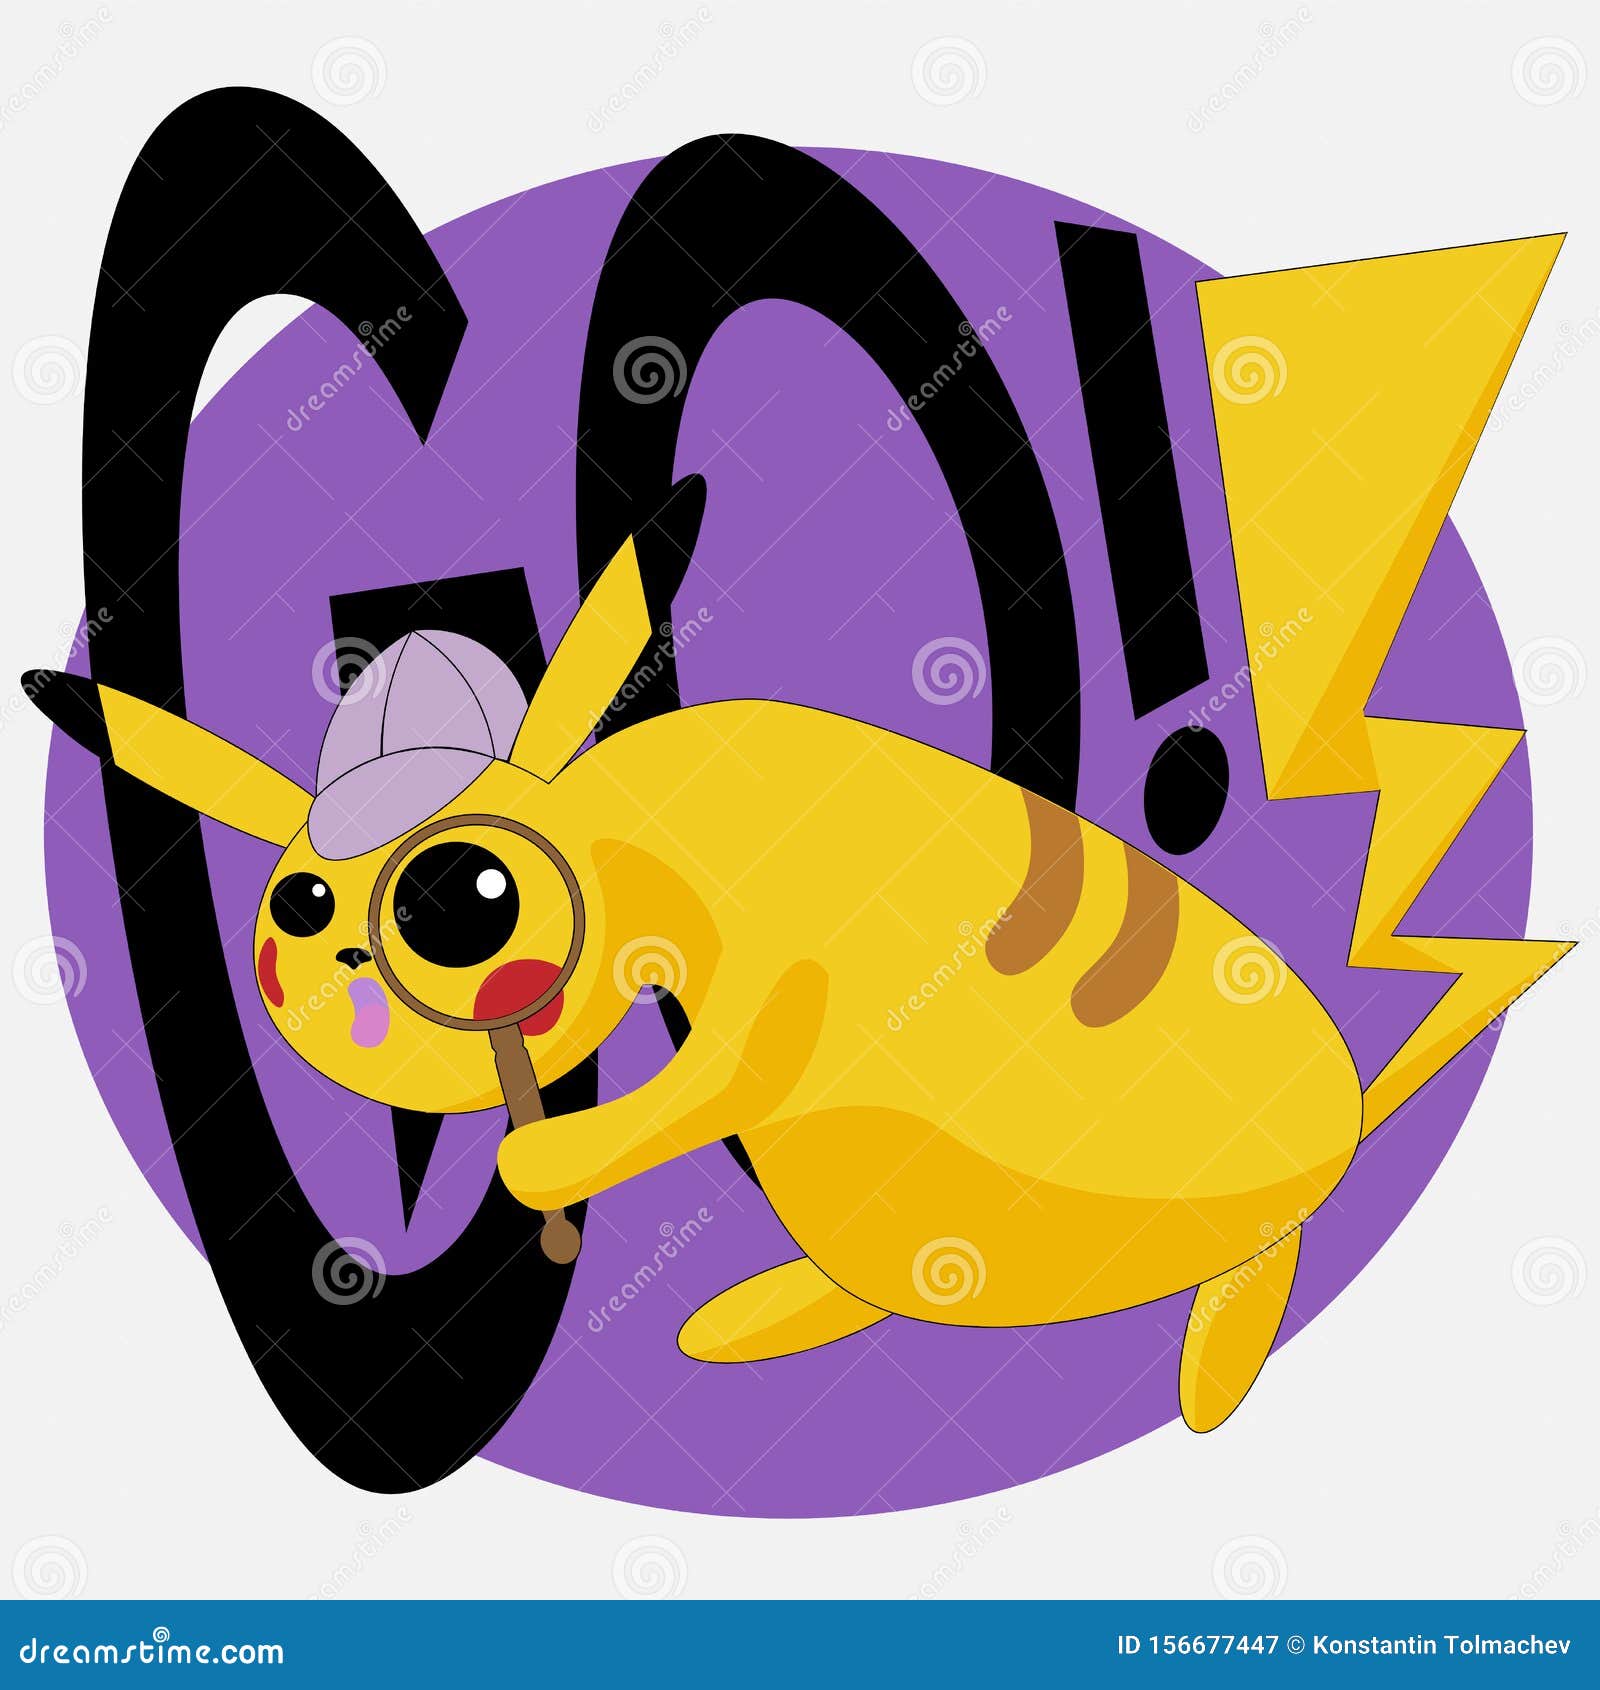 Logo Di Pikachu Pokemon Per Magliette O Adesivi Fotografia